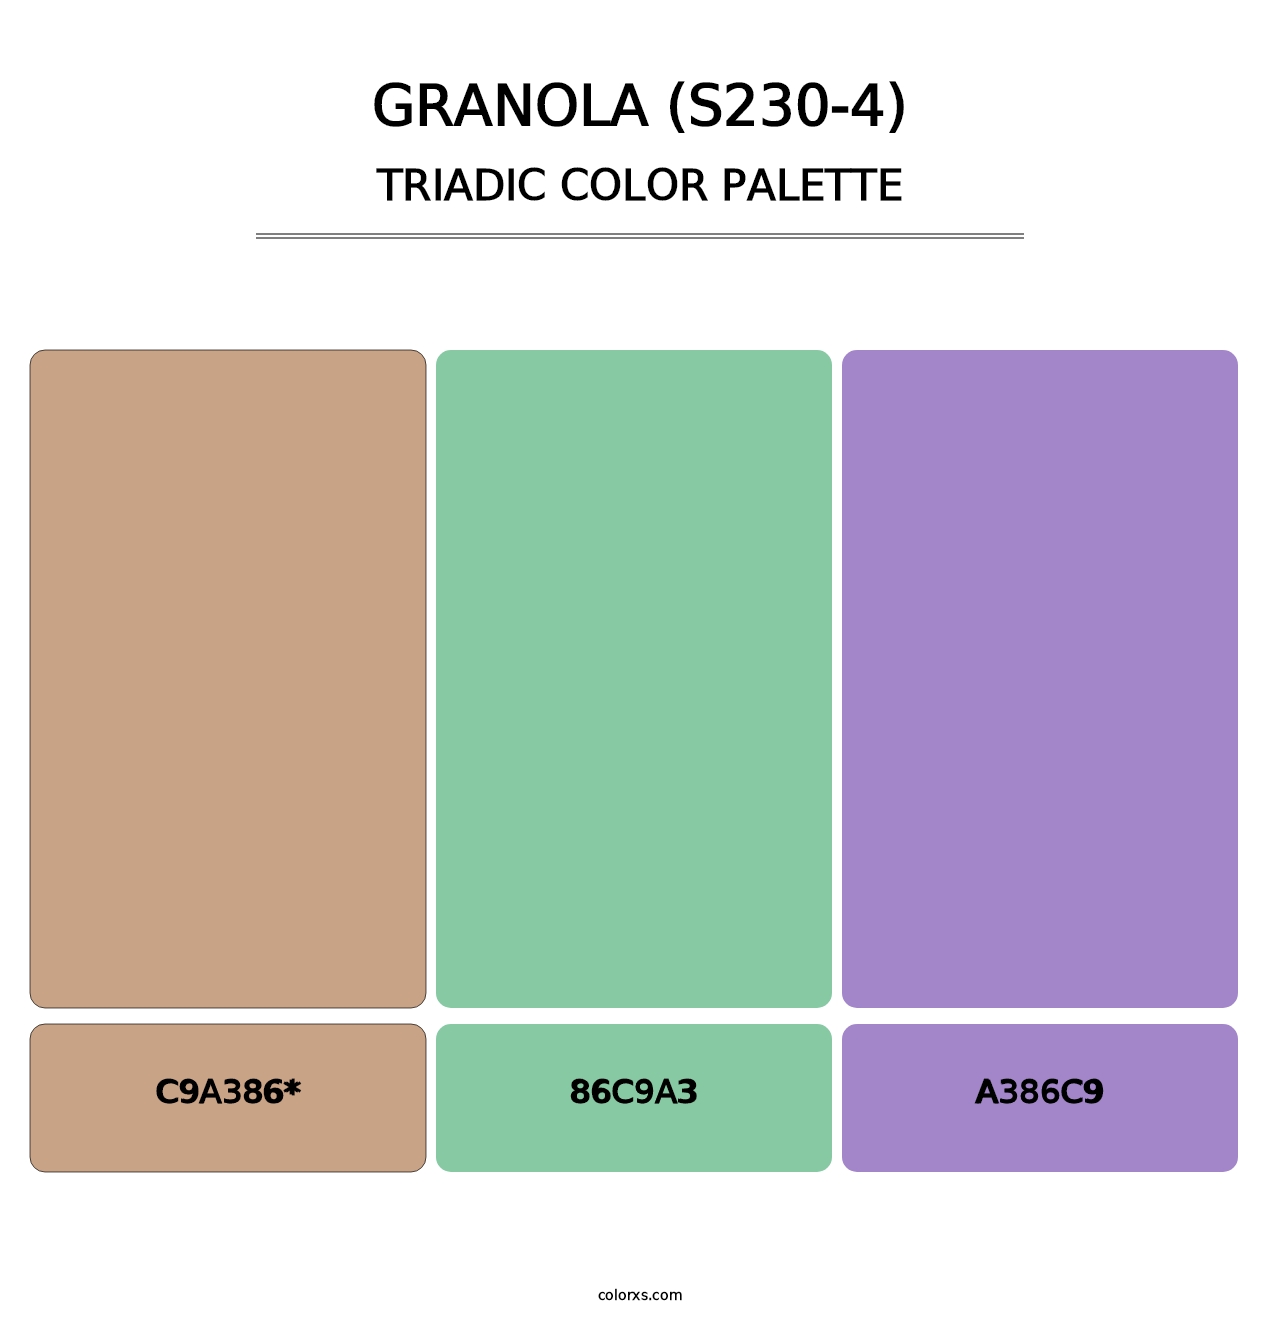 Granola (S230-4) - Triadic Color Palette